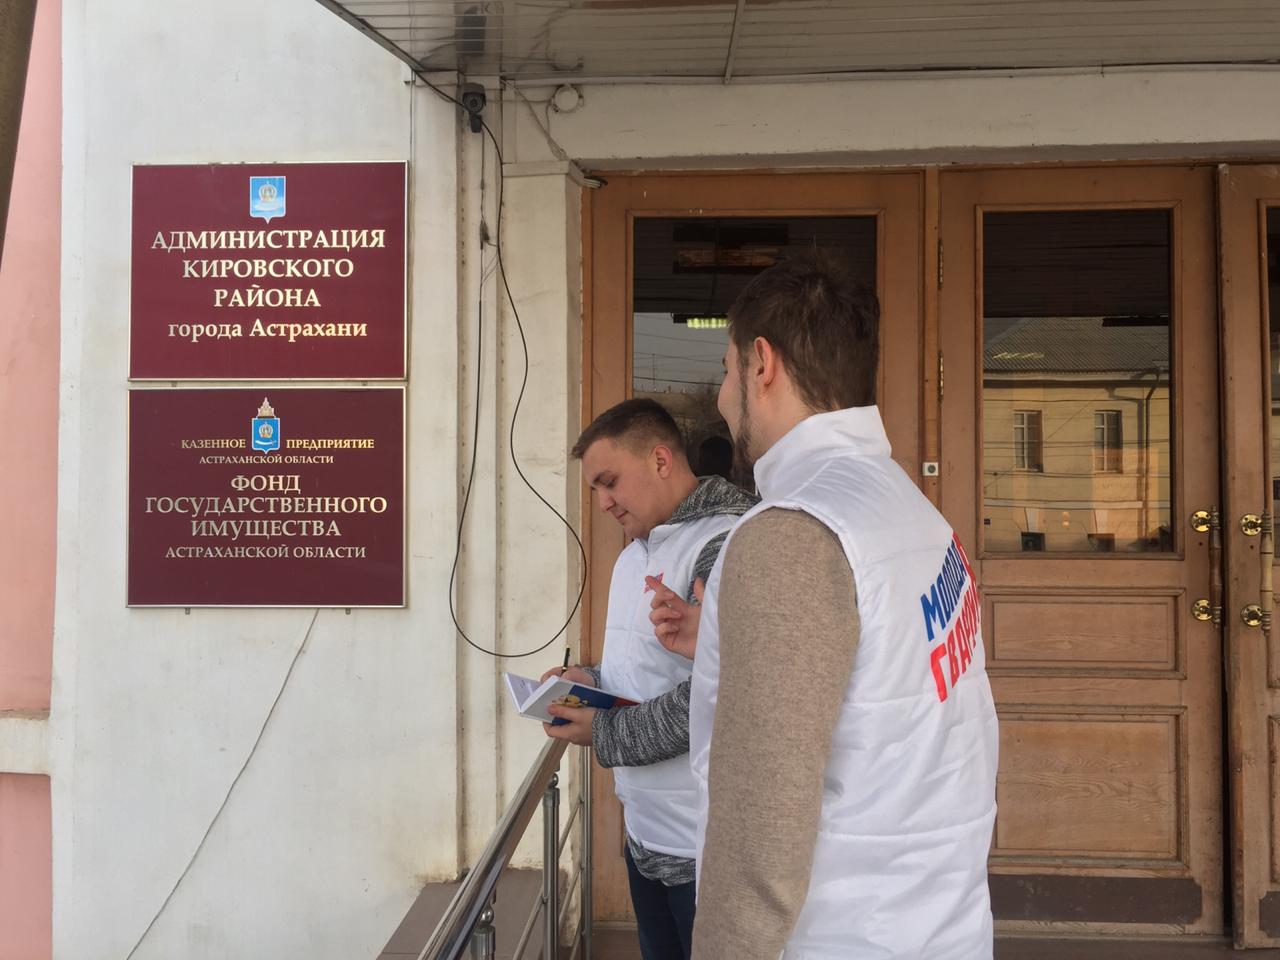 image 19 02 20 12 55 2 В Астрахани здания двух администраций оказались недоступны для инвалидов